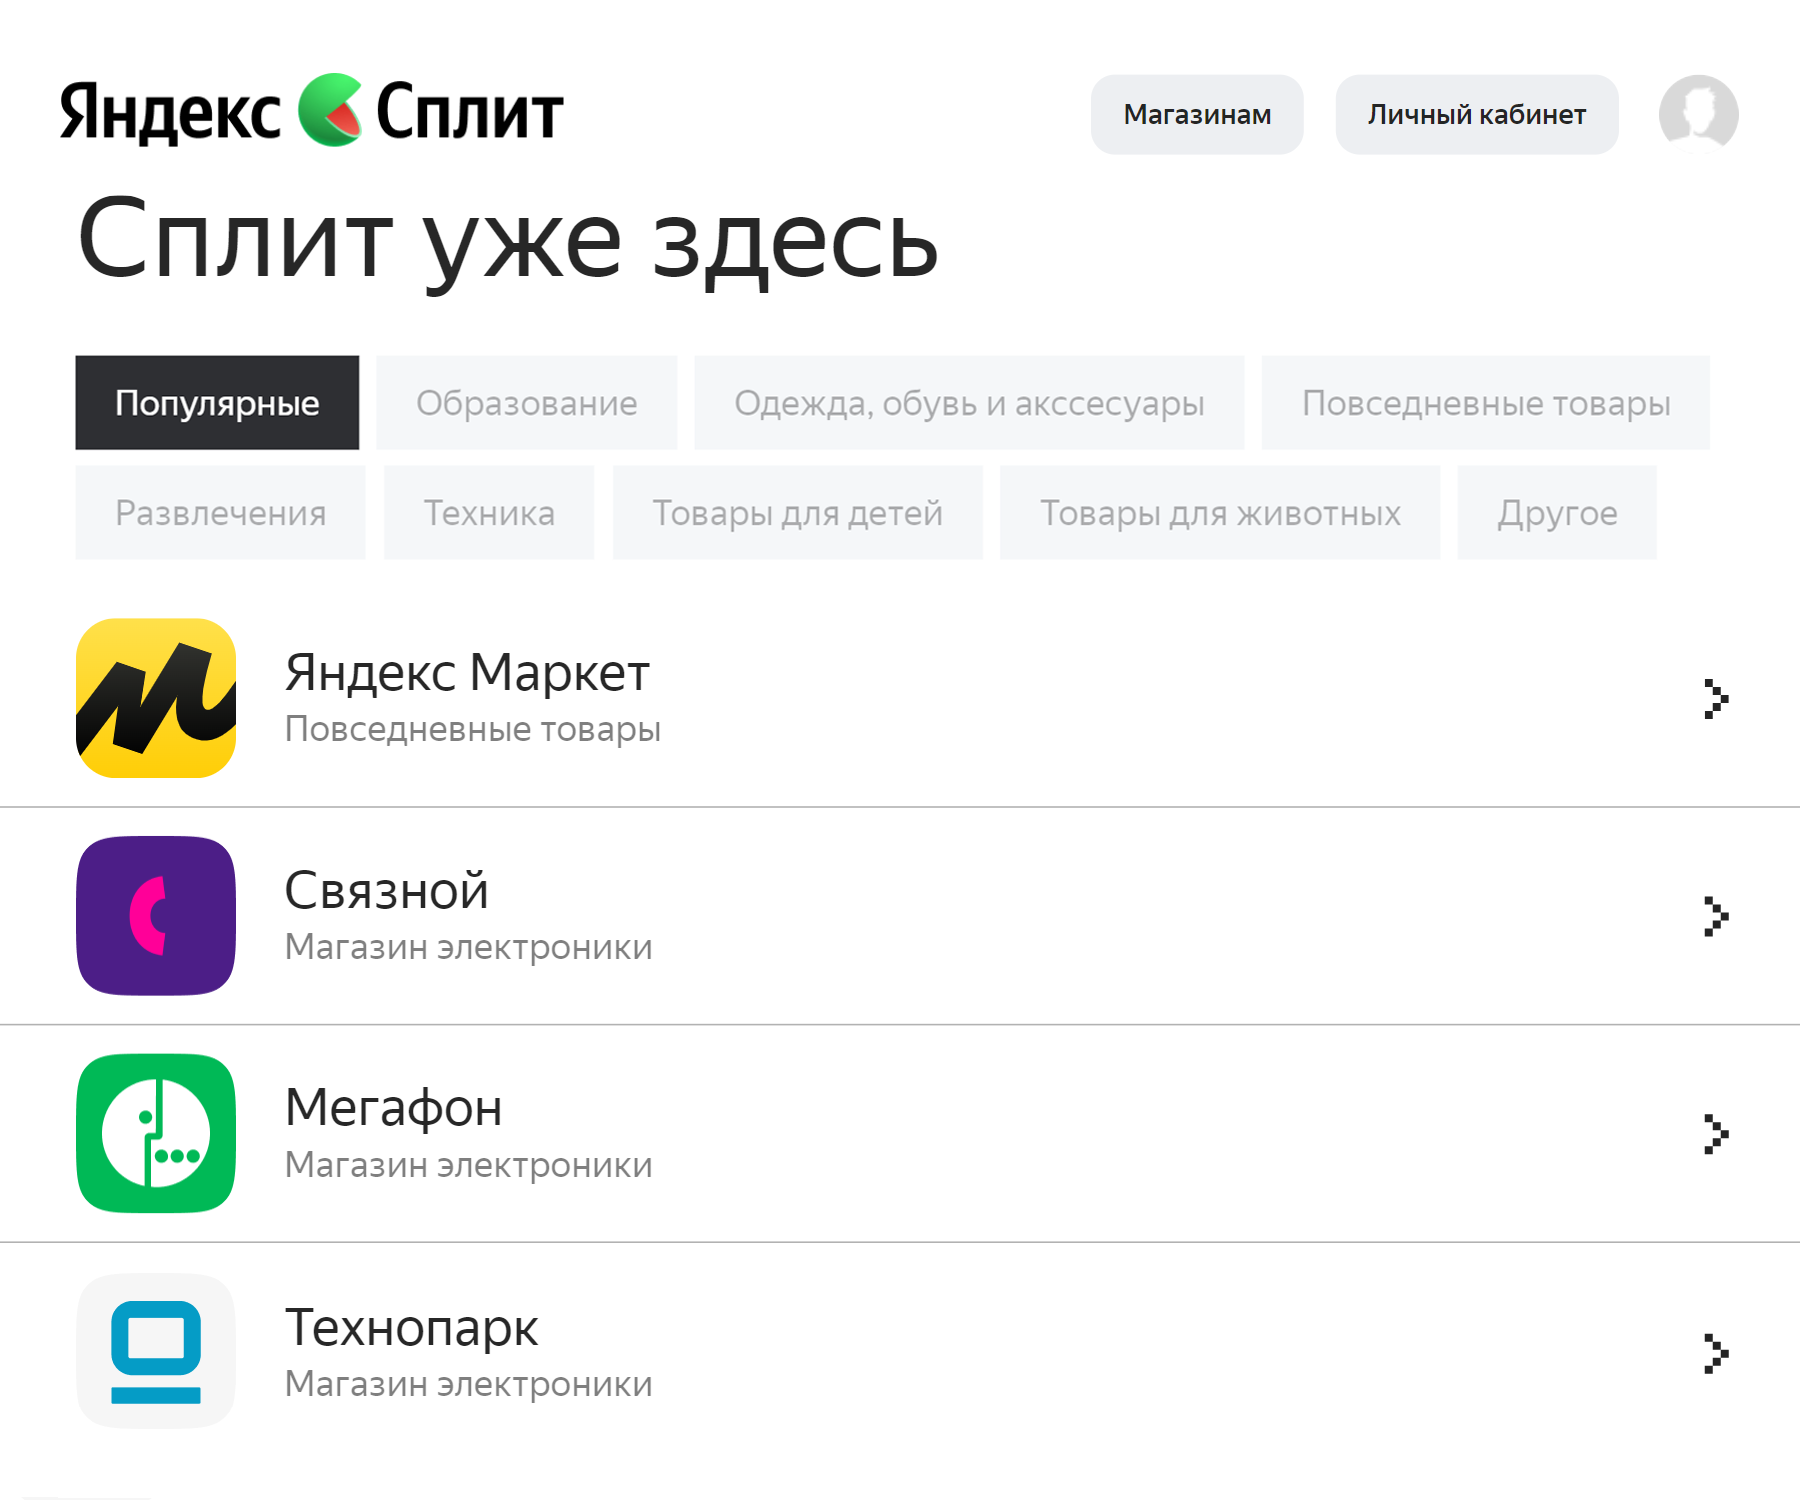 Список магазинов — партнеров сервиса «Сплит». Источник: split.yandex.ru